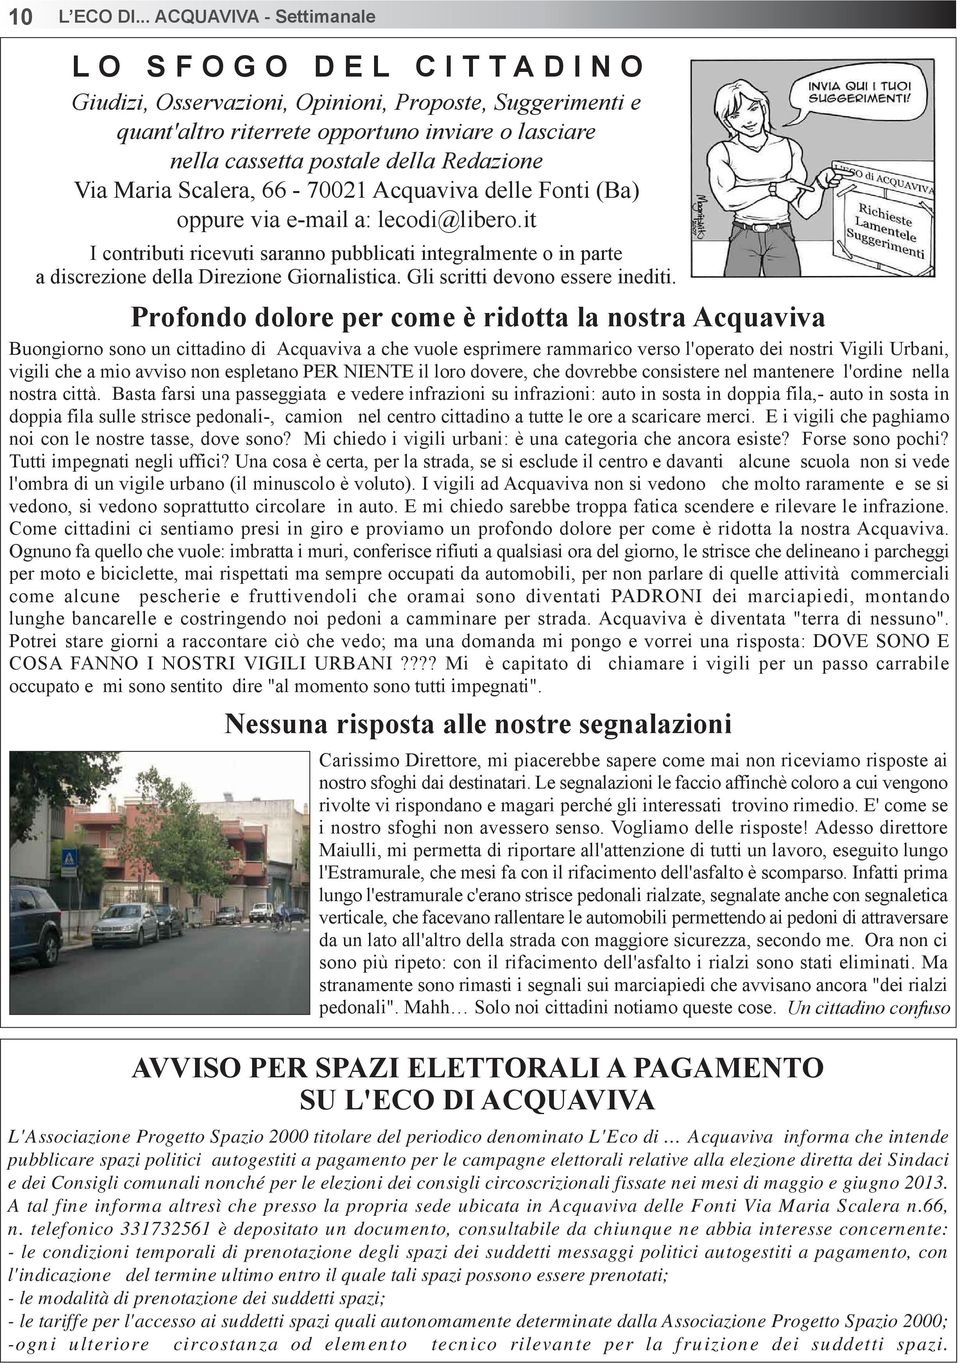 Via Maria Scalera, 66-70021 Acquaviva delle Fonti (Ba) oppure via e-mail a: lecodi@libero.